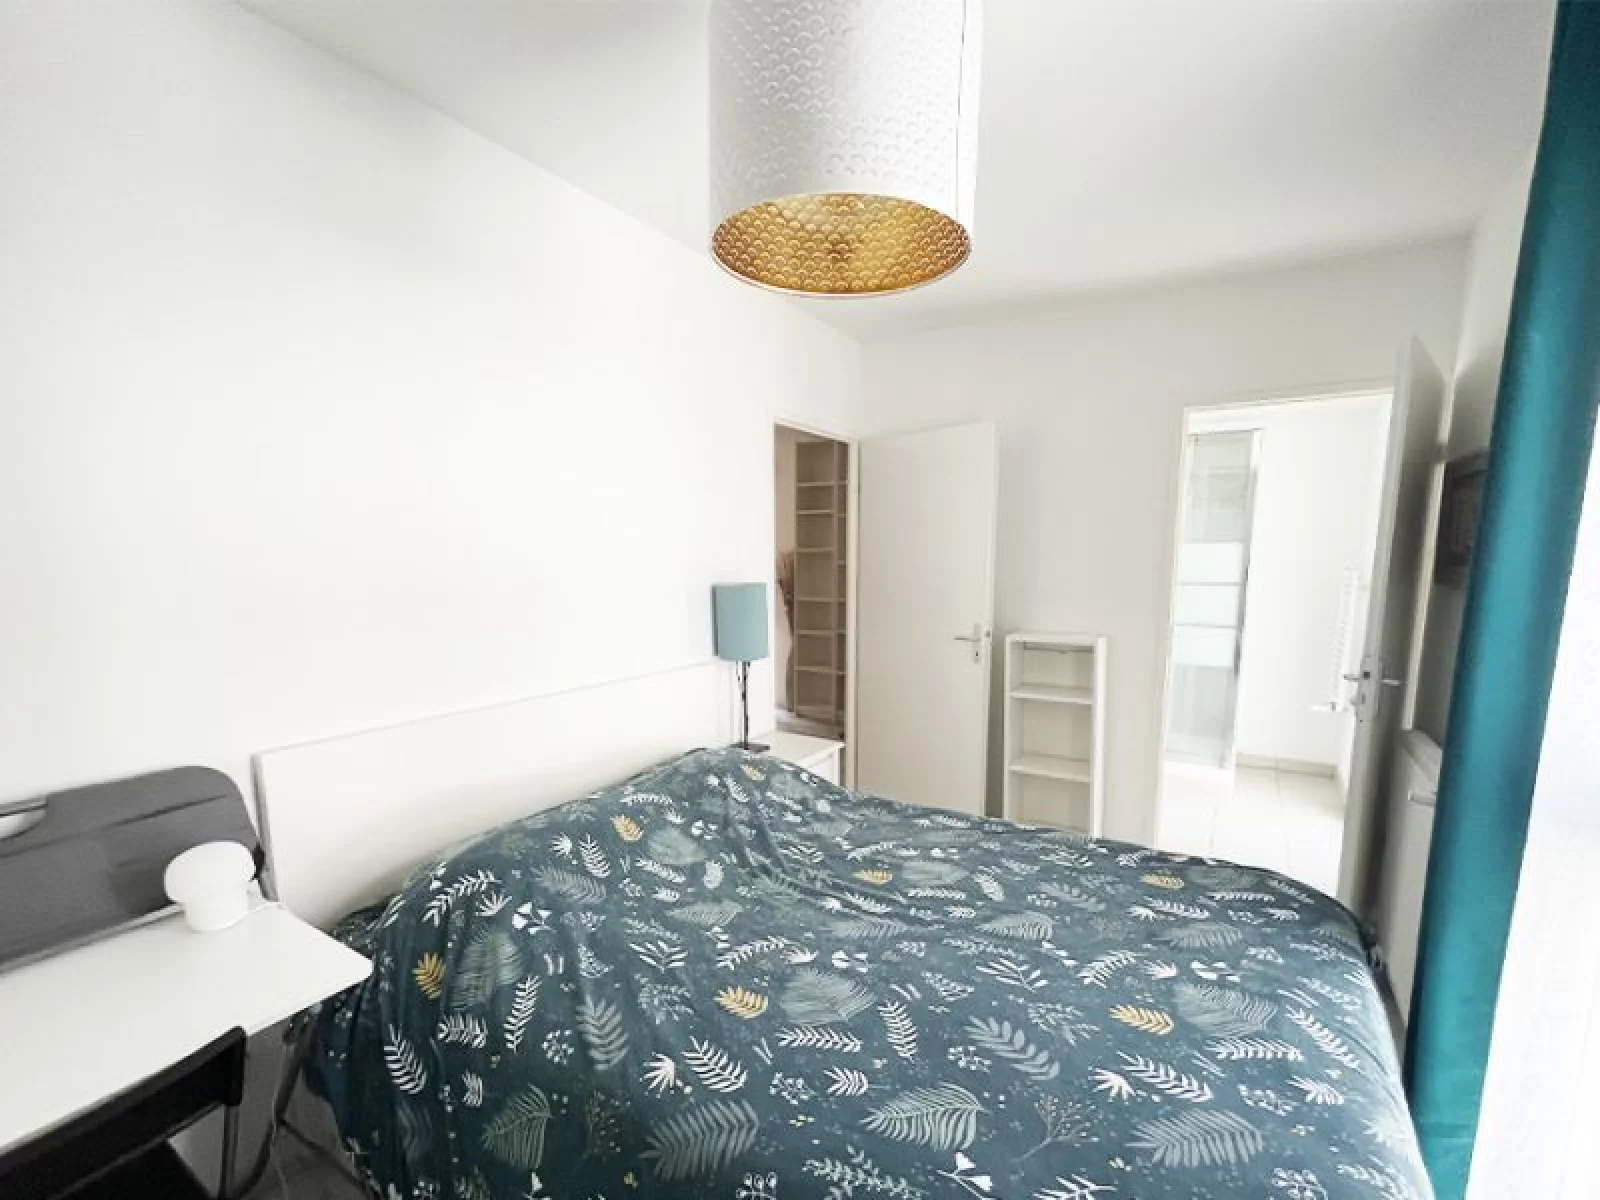 Location appartement triplex meublé 3 pièces 76 m² (Bordeaux - Bassins à flot)